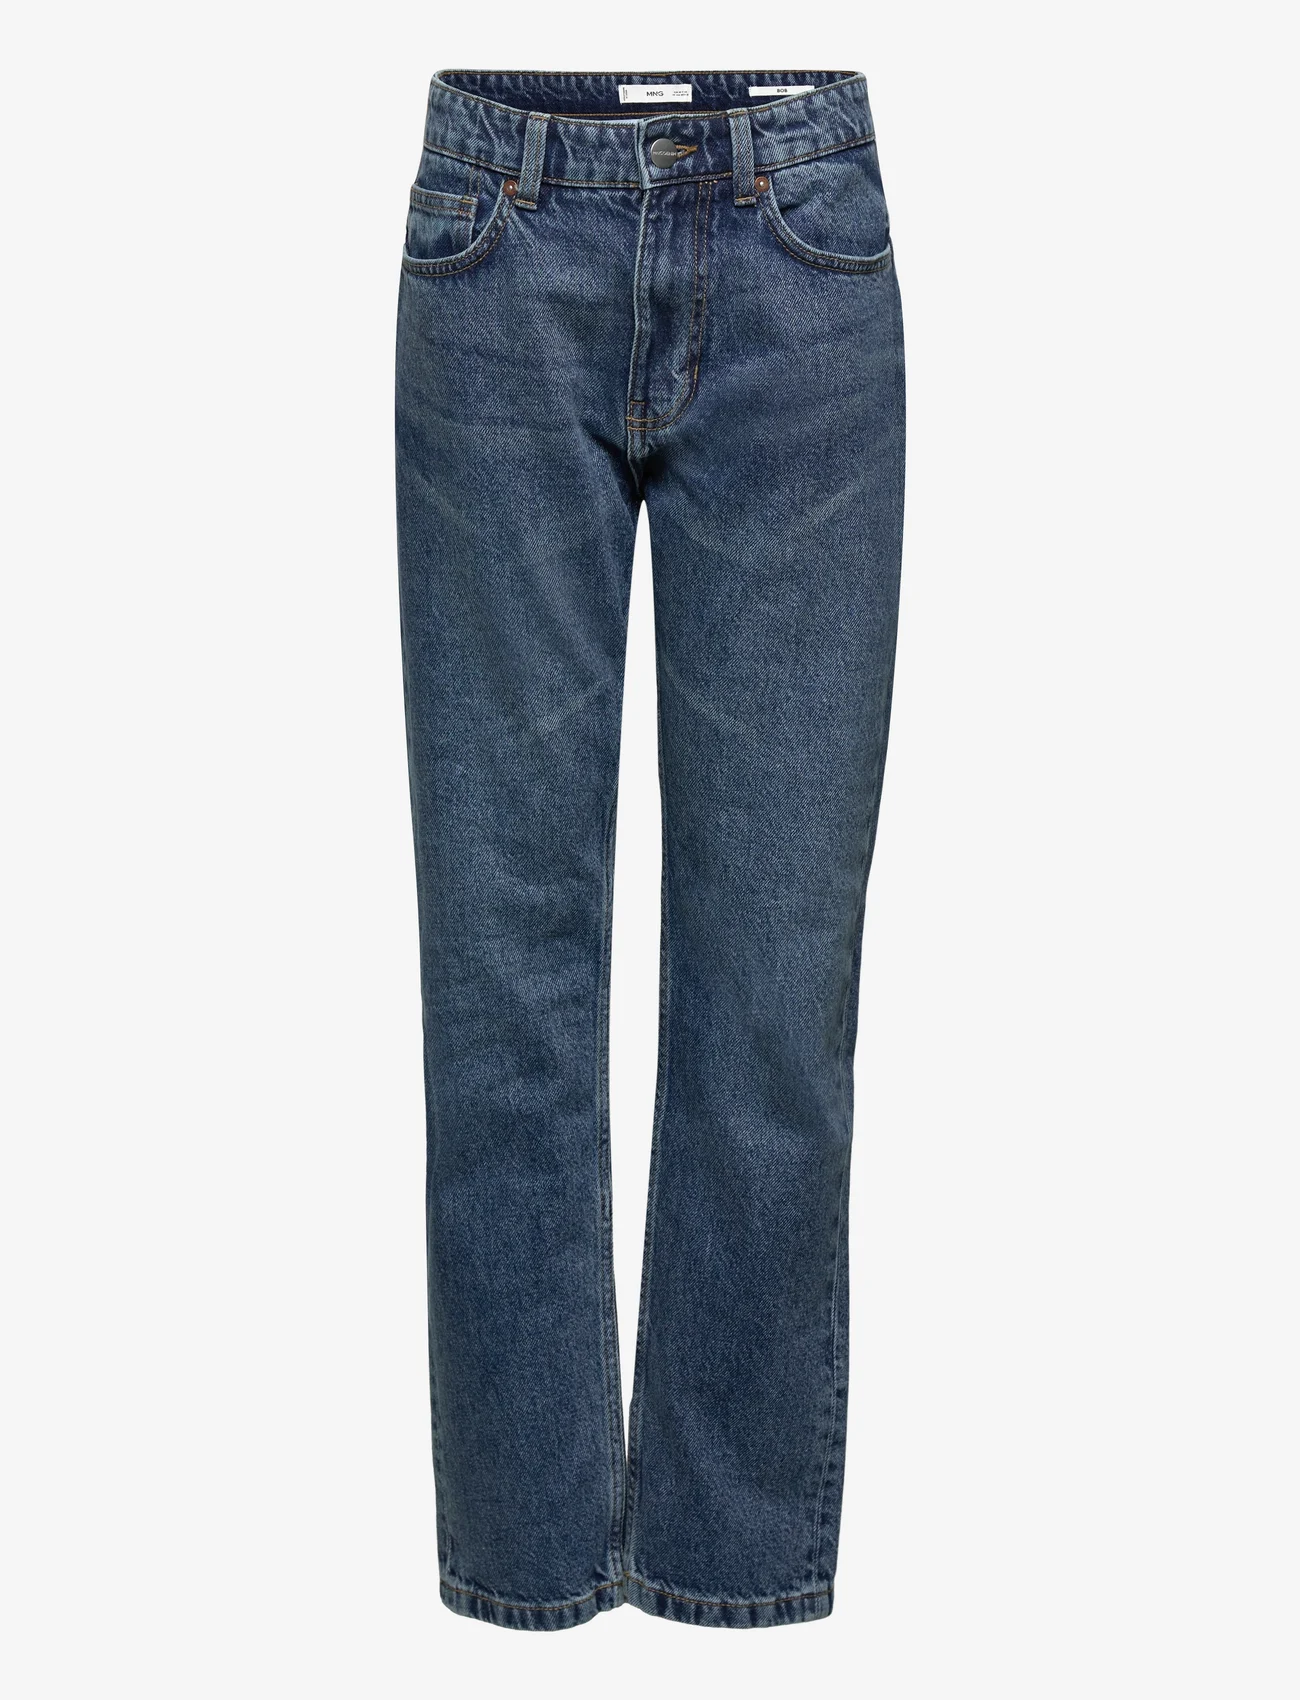 Mango - Bob straight-fit jeans - suorat farkut - dark denim - 0